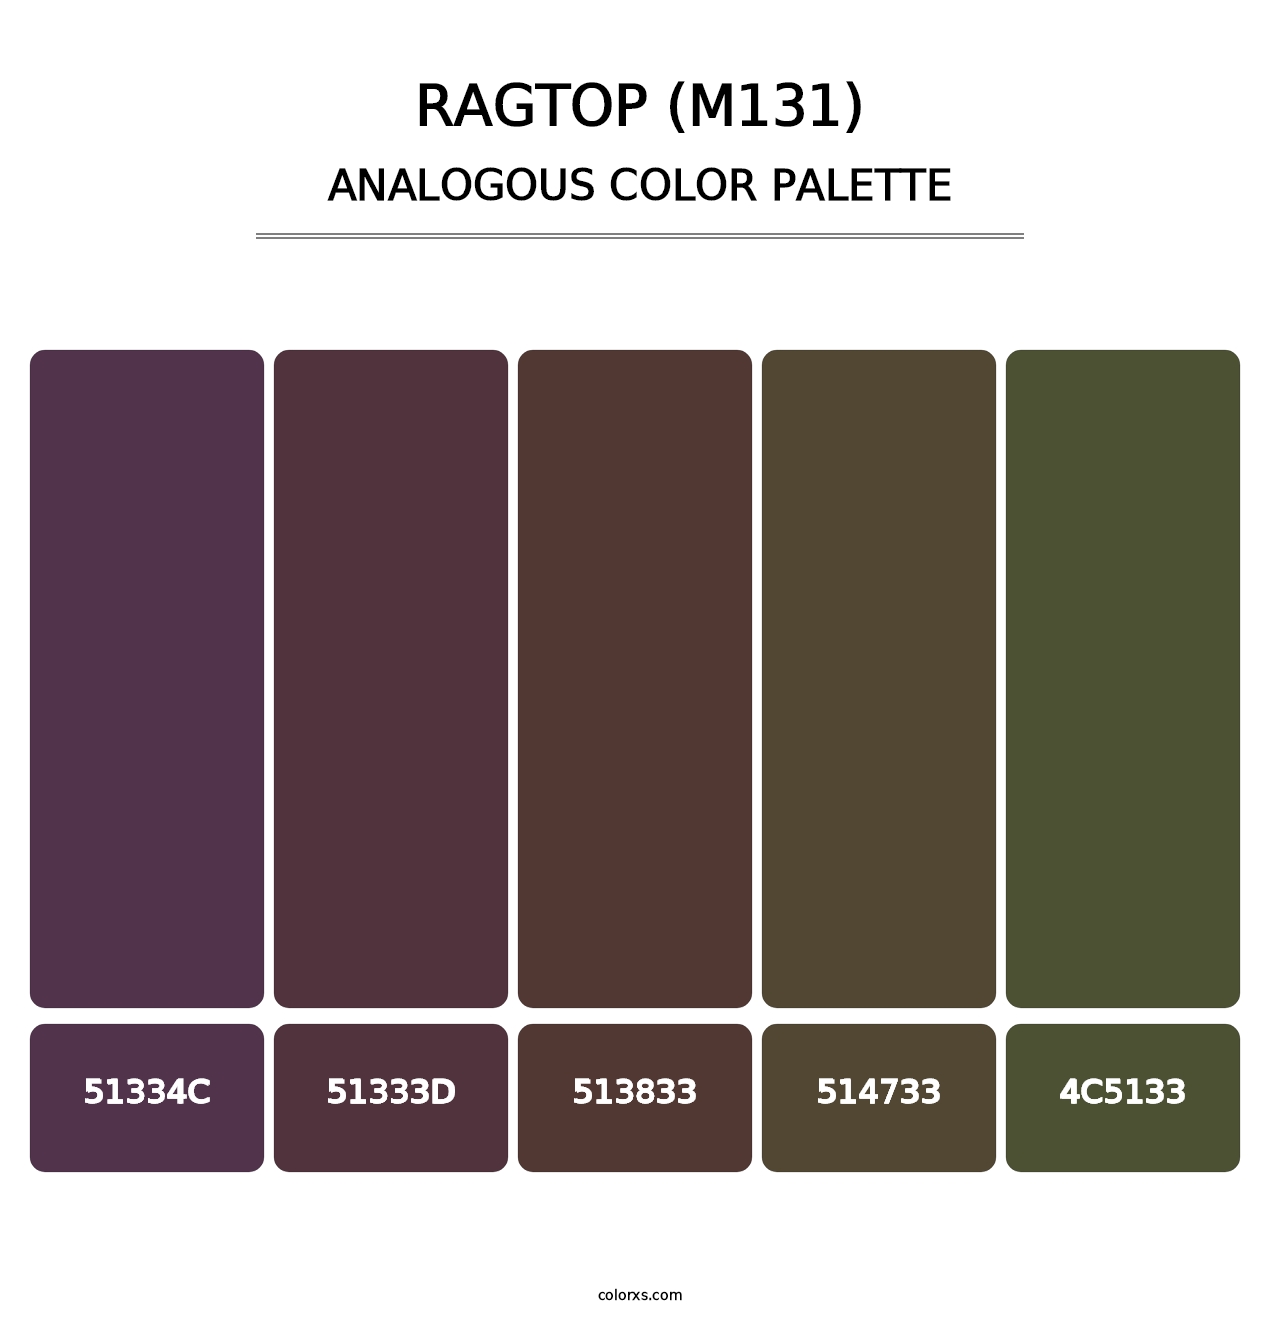 Ragtop (M131) - Analogous Color Palette